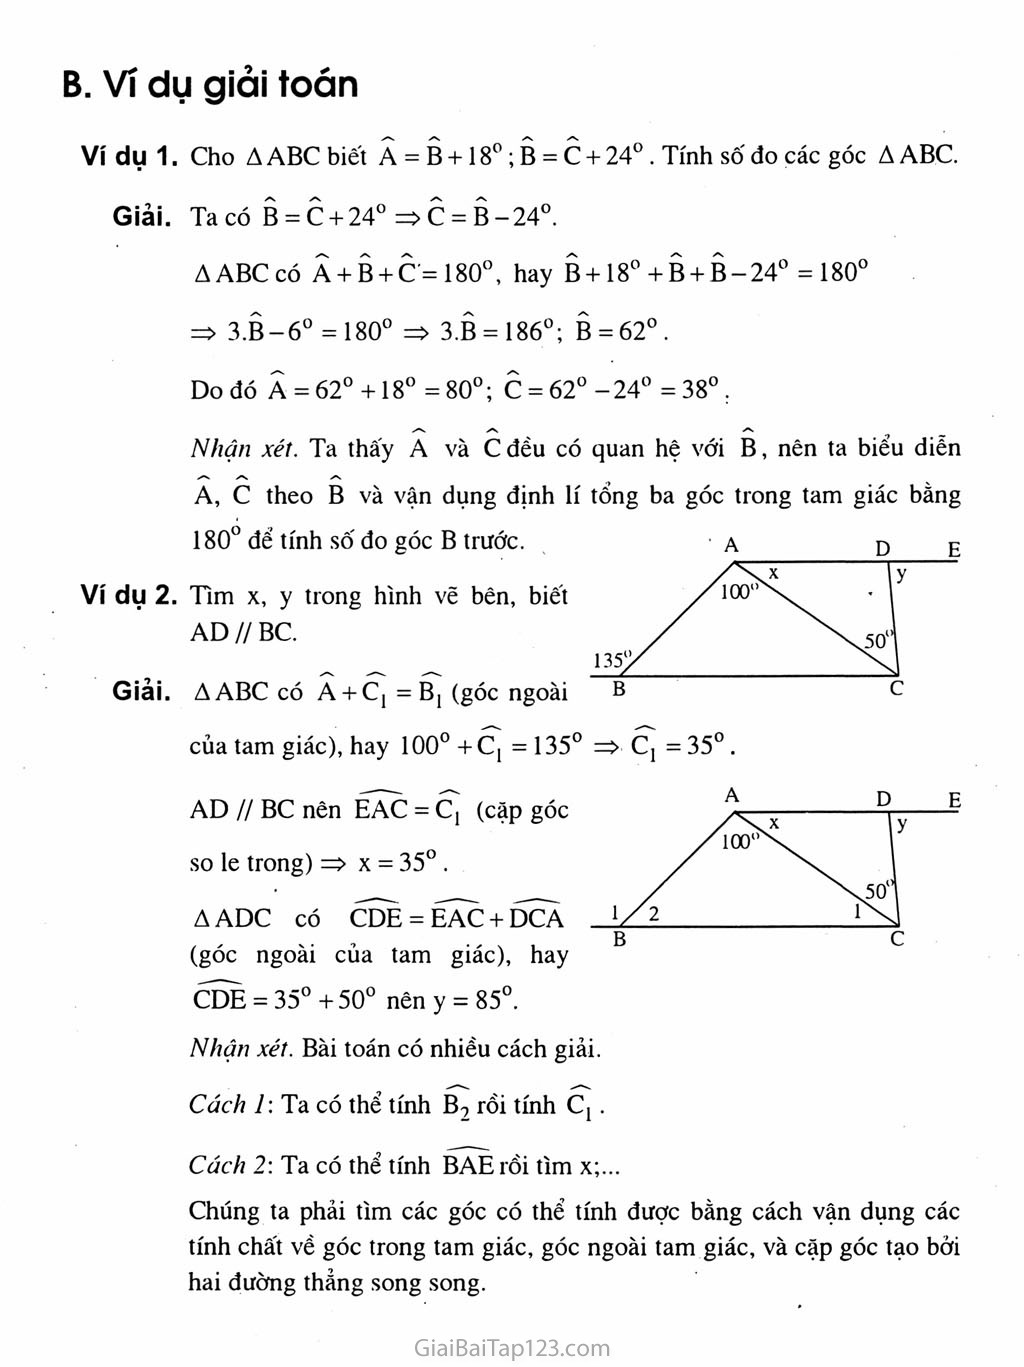 Bài 1. Tổng ba góc của một tam giác trang 2